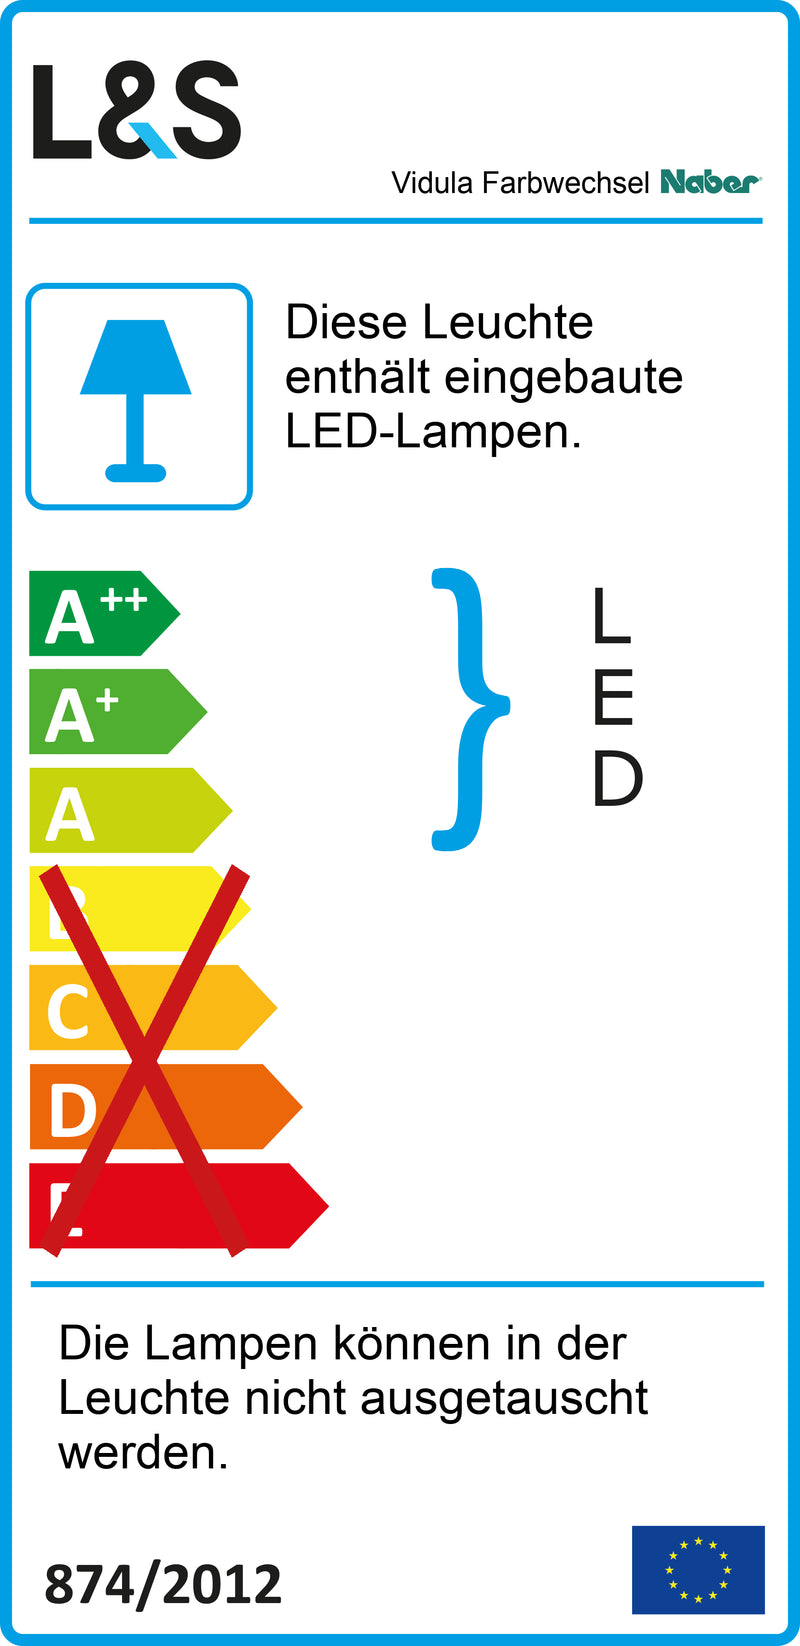 E-Label zu Zeichnung zu Vidula Farbwechsel LED als Variante L 1200 mm, edelstahlfarbig von Naber GmbH in der Kategorie Lichttechnik in Österreich auf conceptshop.at